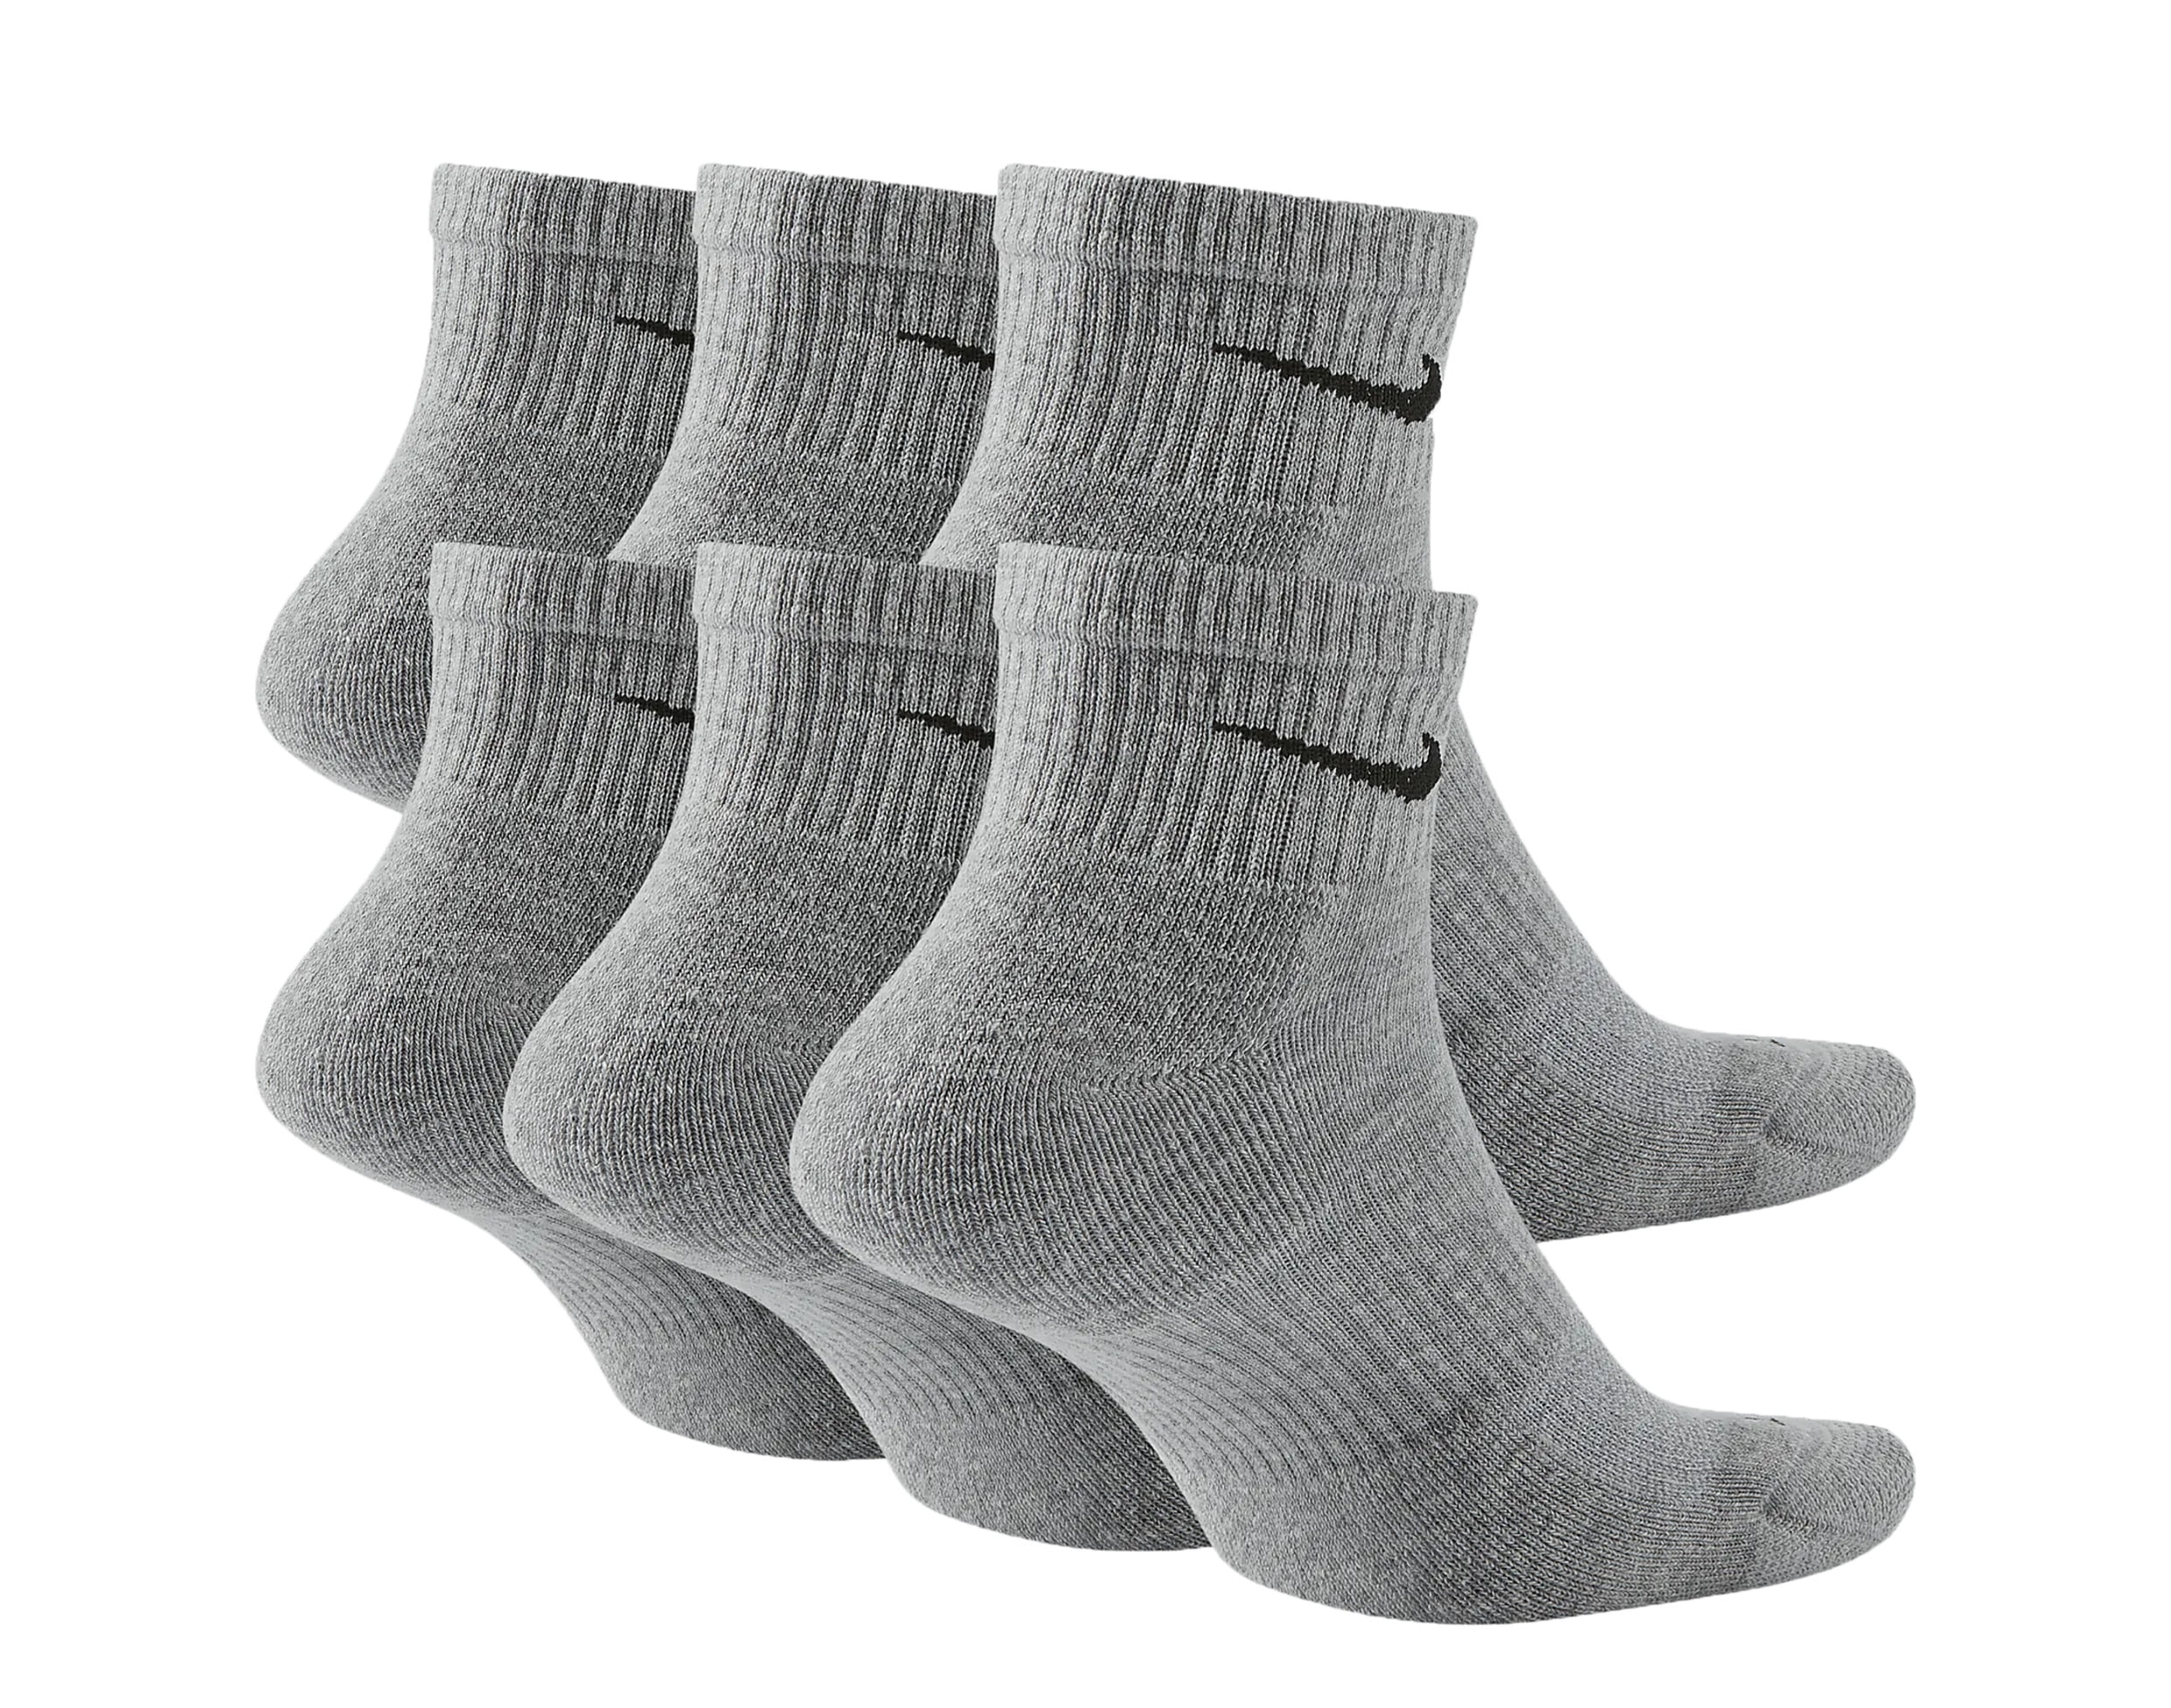 black and grey nike socks